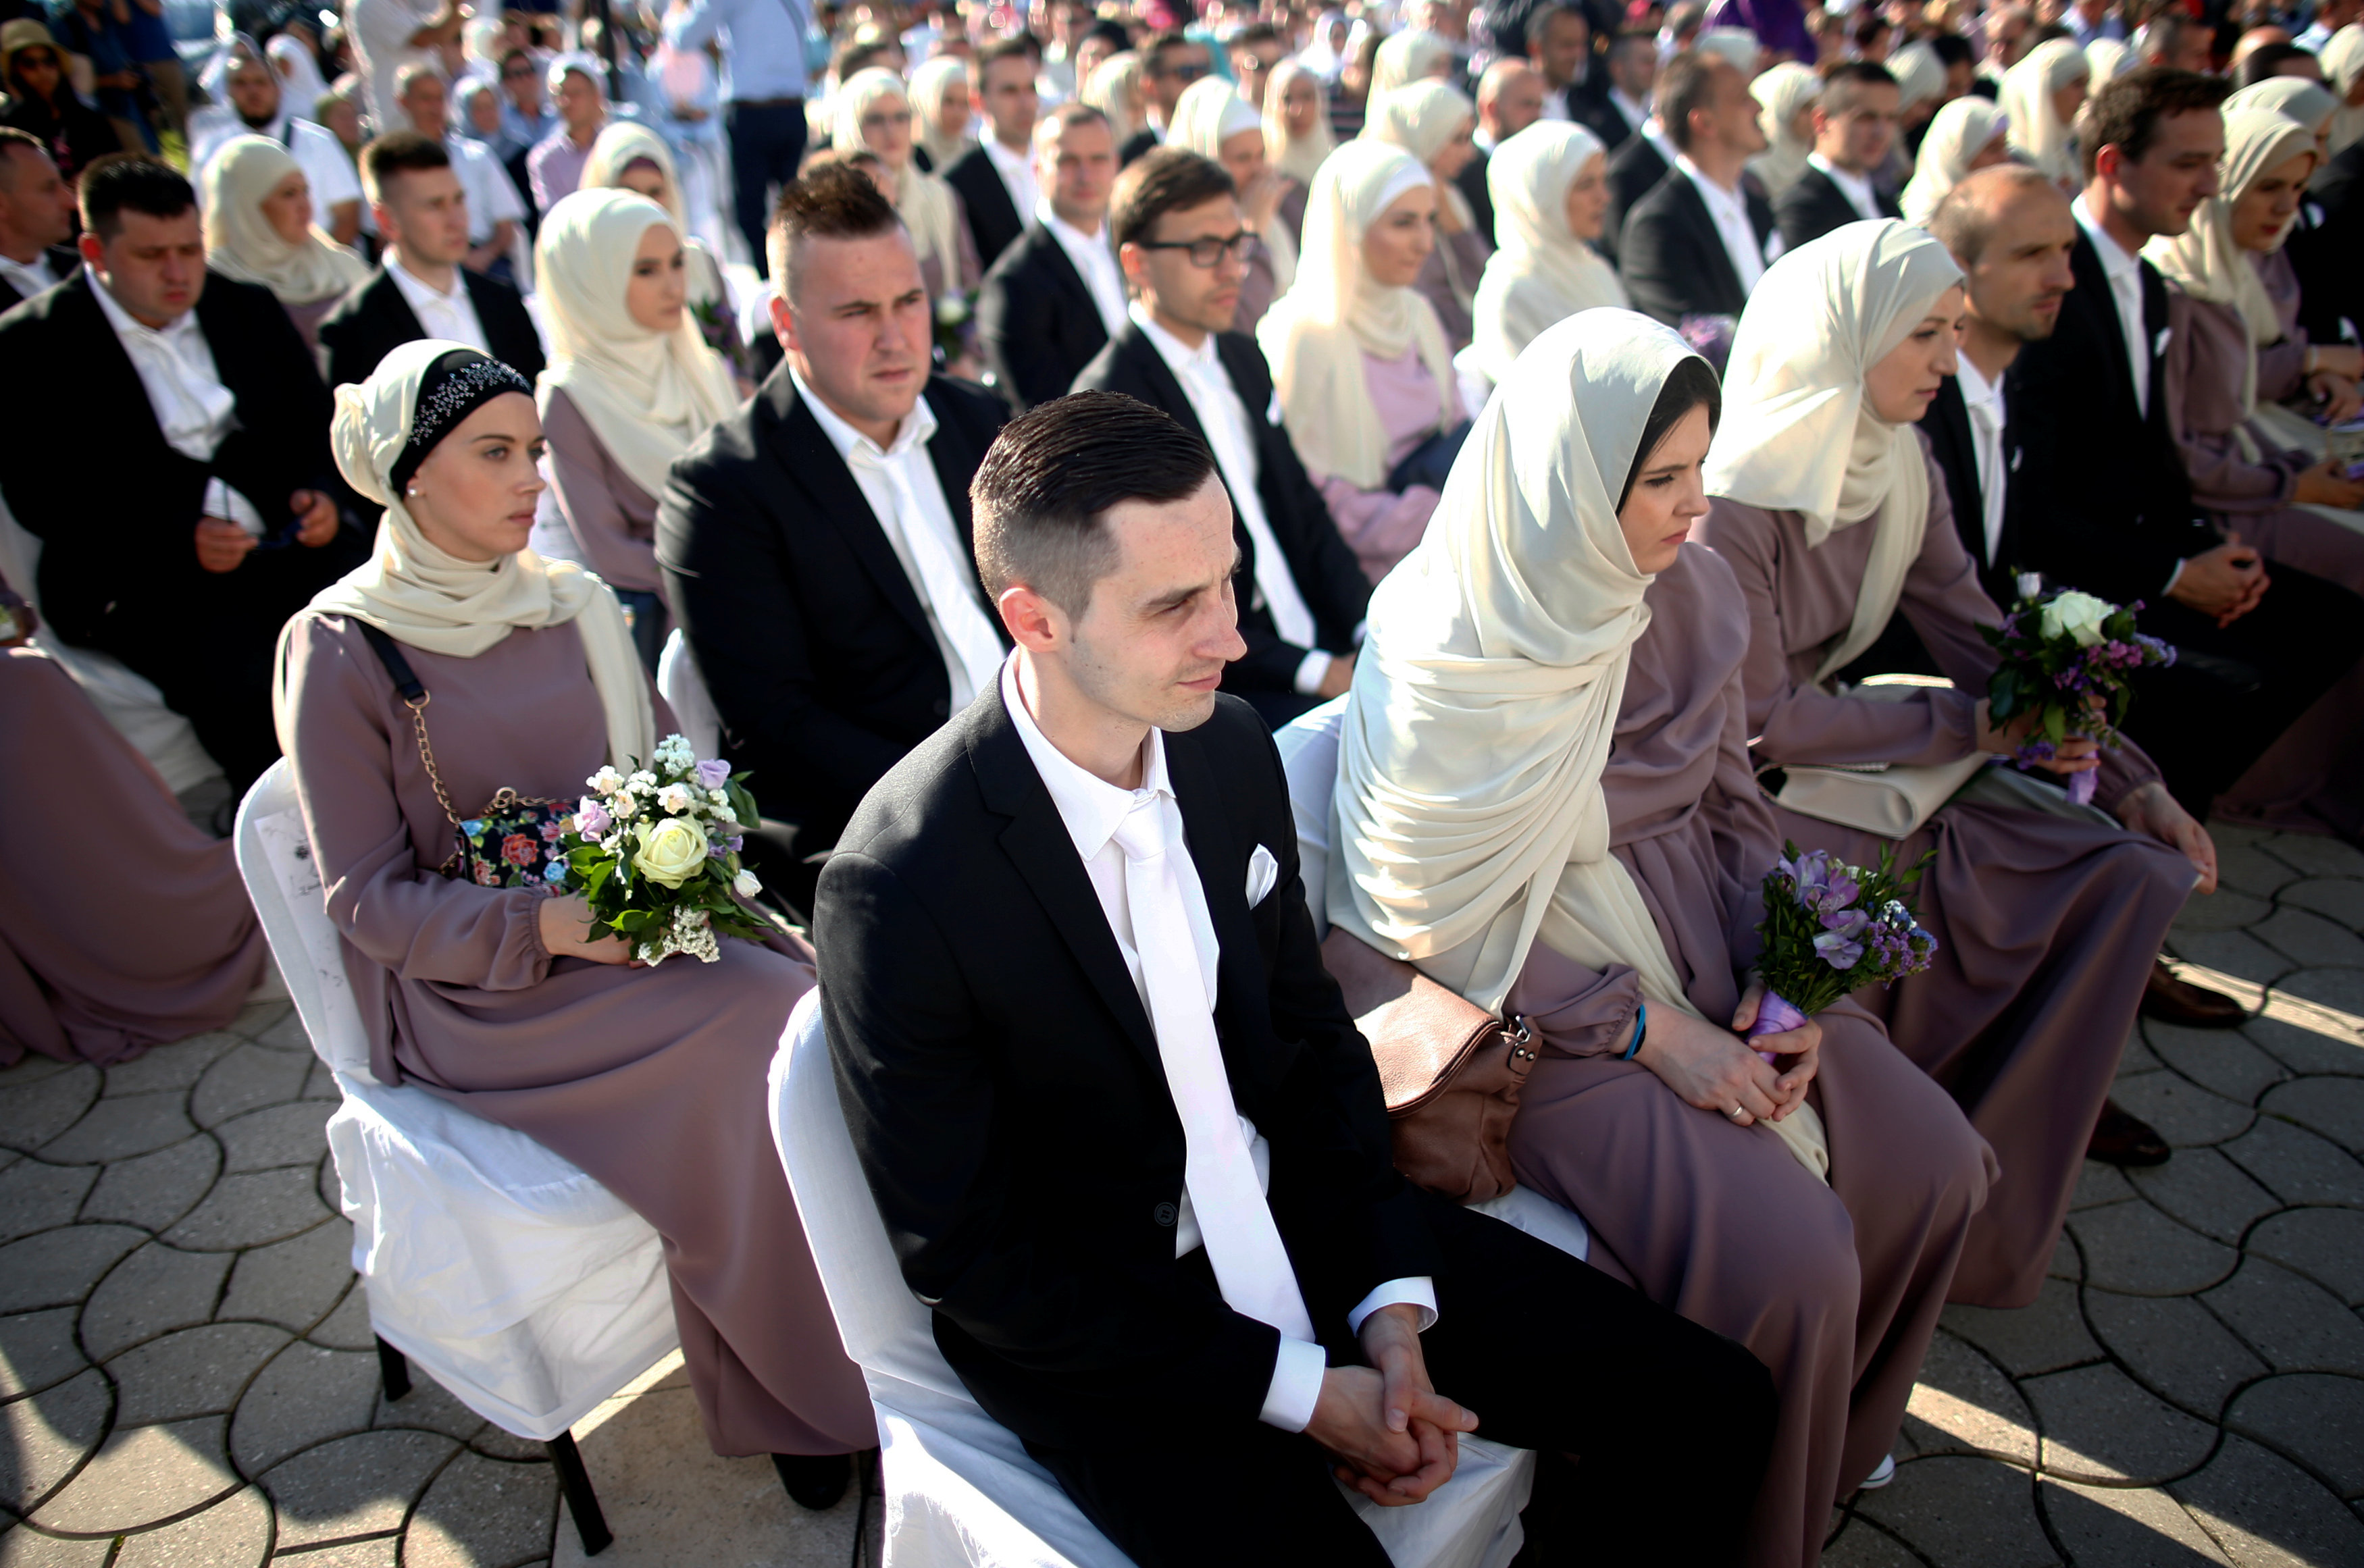 حفل زفاف جماعي لـ 120 عريس وعروسة في البوسنة